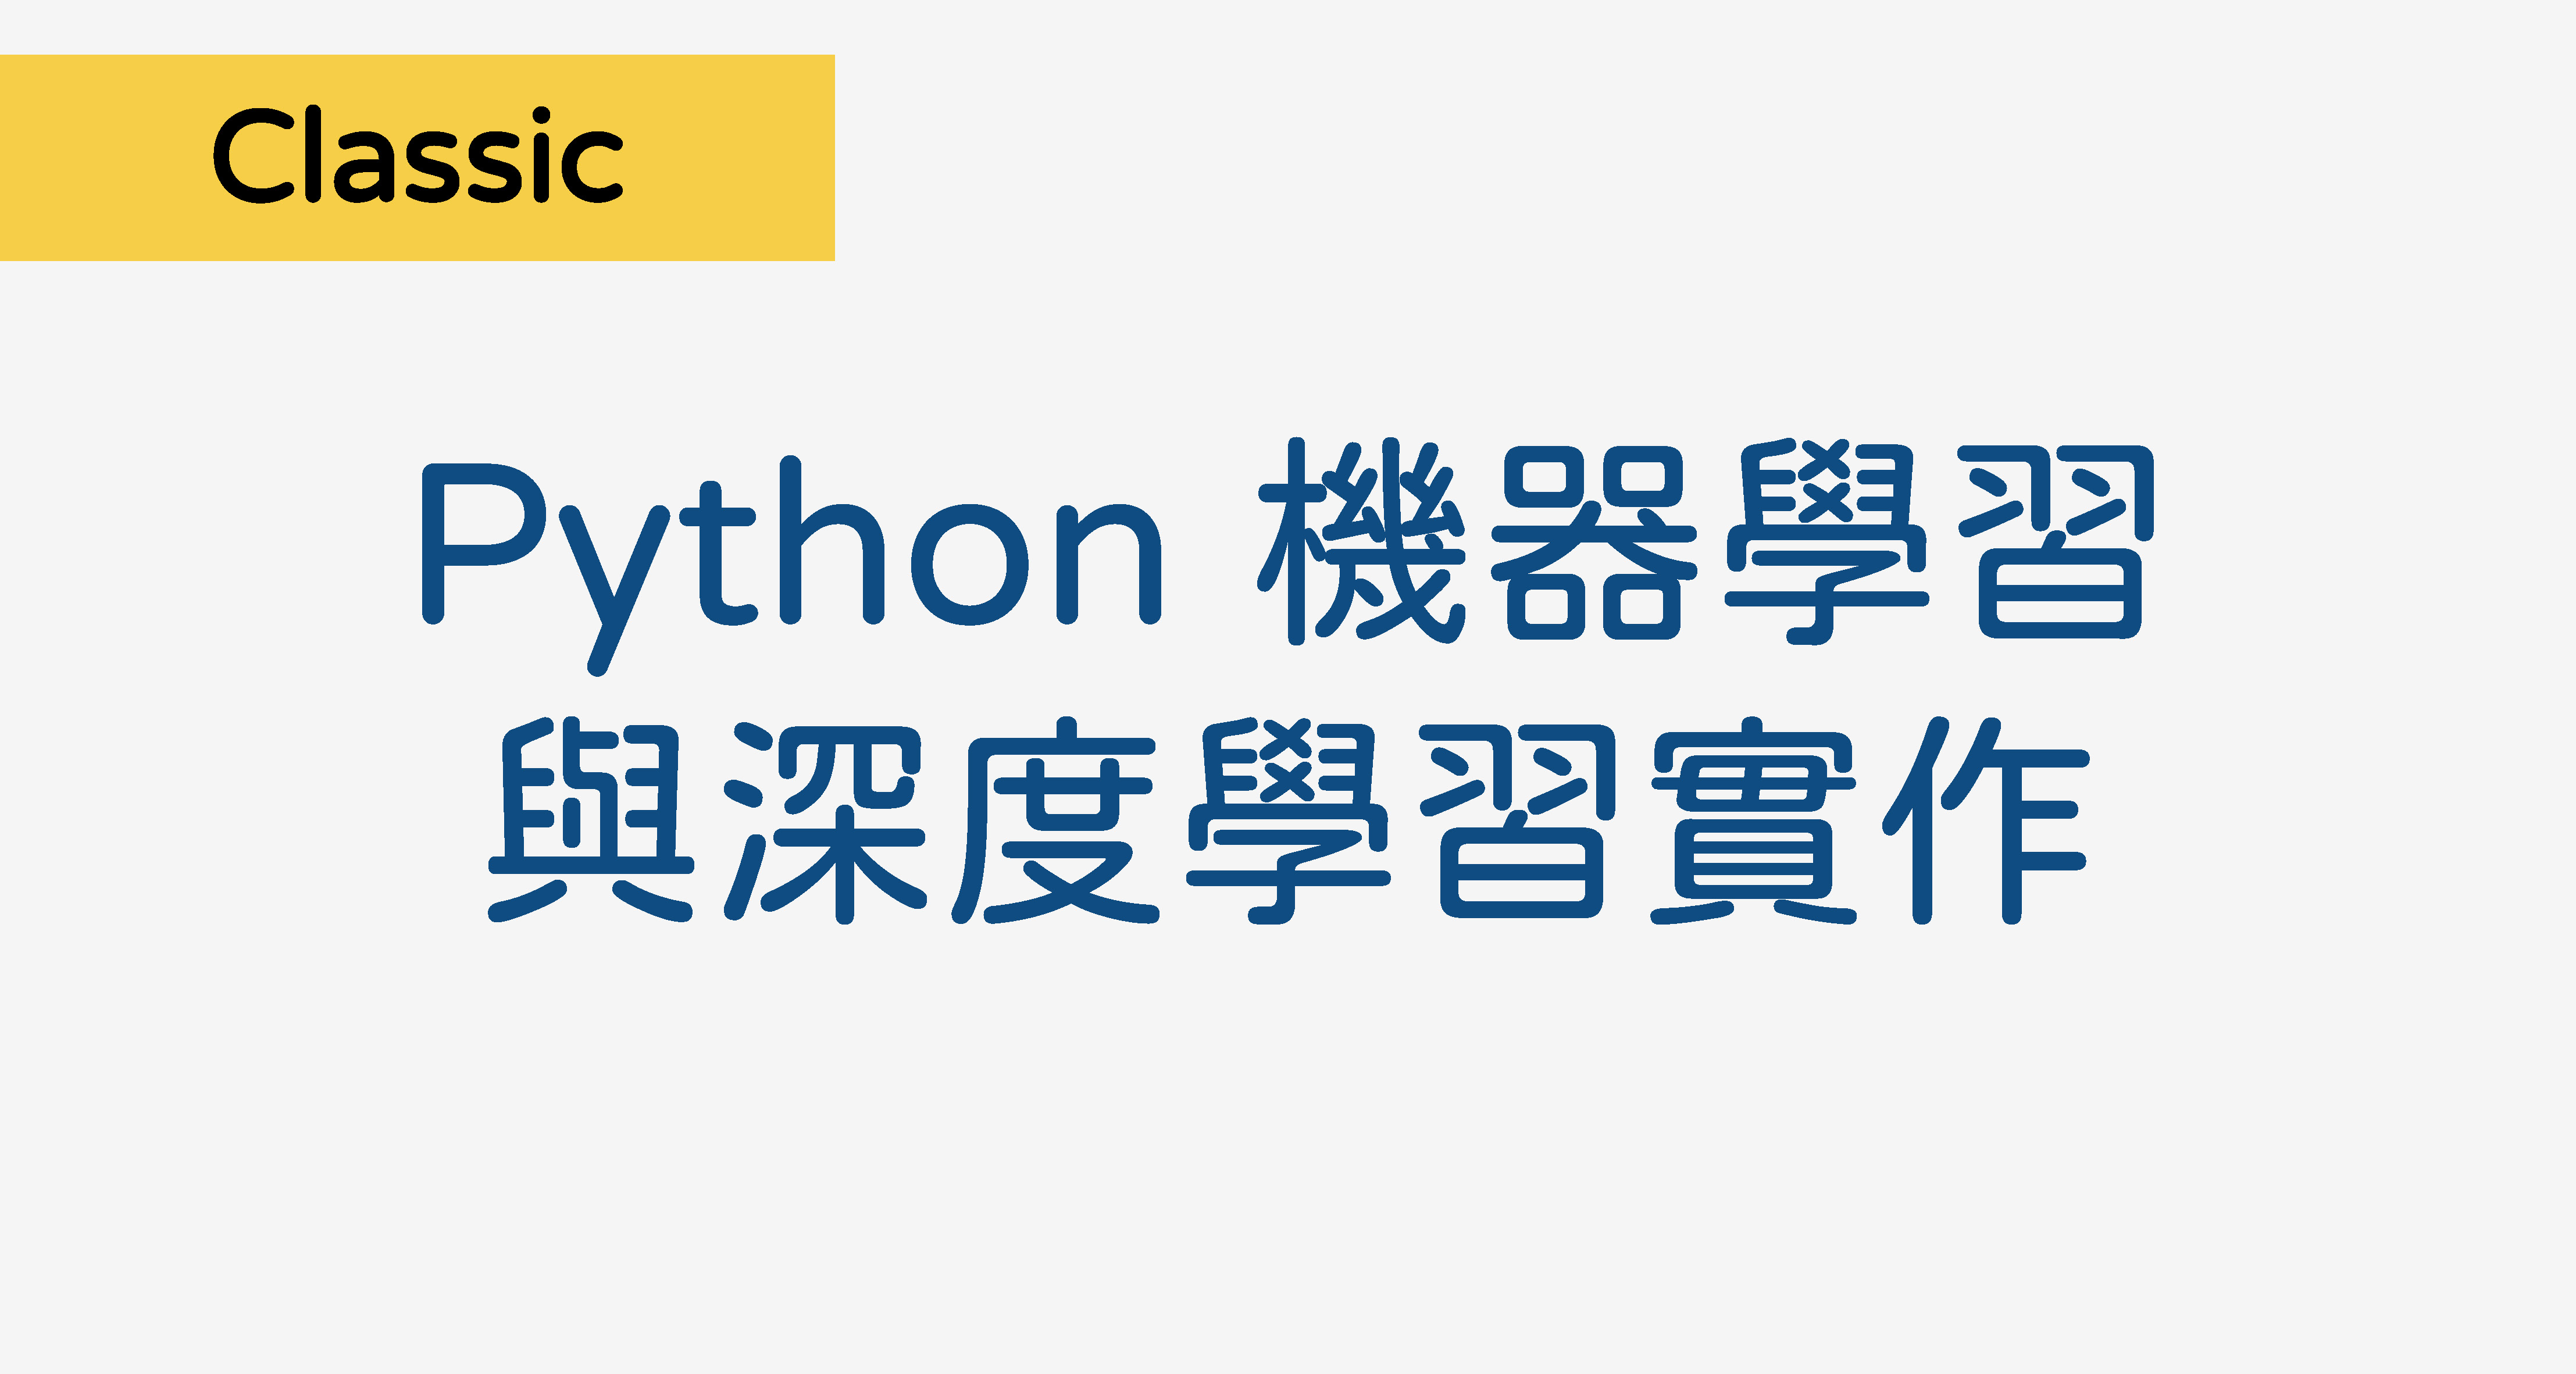 Python 機器學習與深度學習實作 PY002